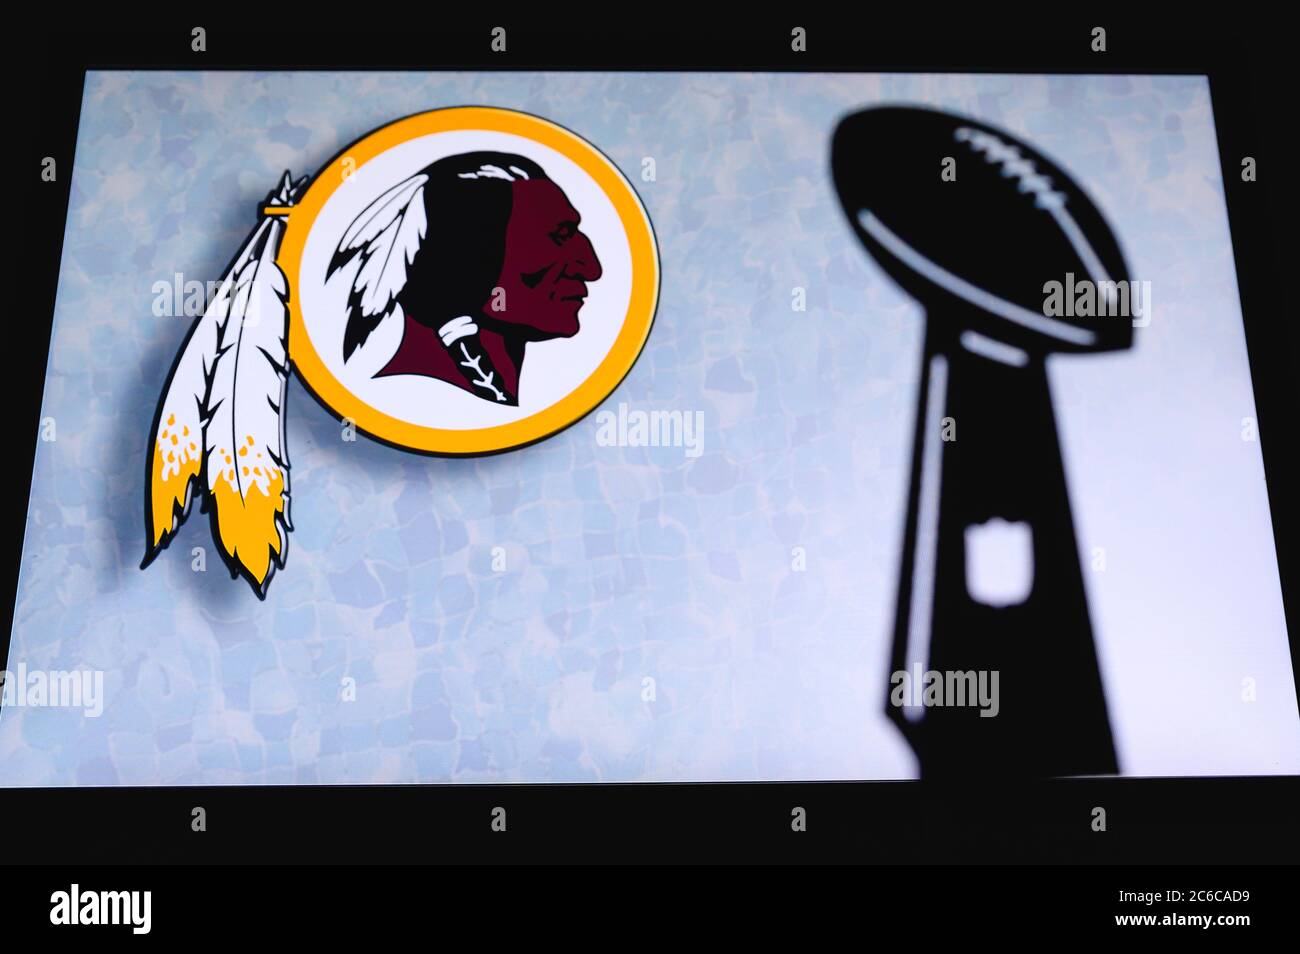 Washington Redskins, squadra di calcio americana professionale, silhouette del trofeo NFL, logo del club in background. Foto Stock